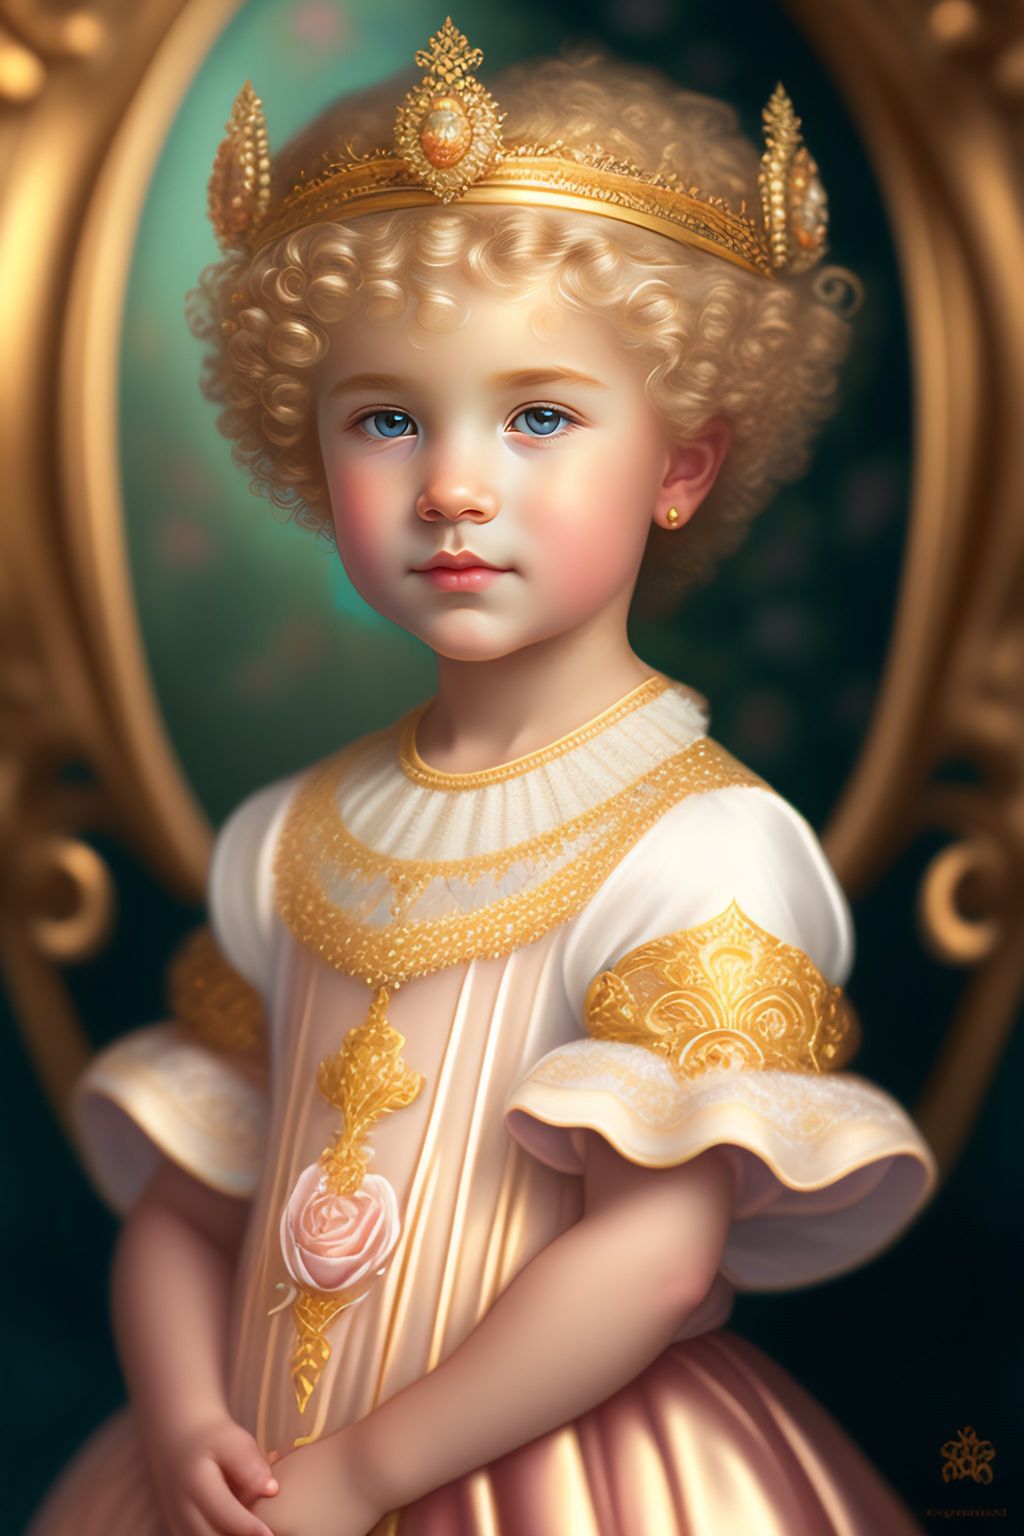 Маленькие принцессы, у которых светлые кудряшки короткие и украшены золотыми украшениями.